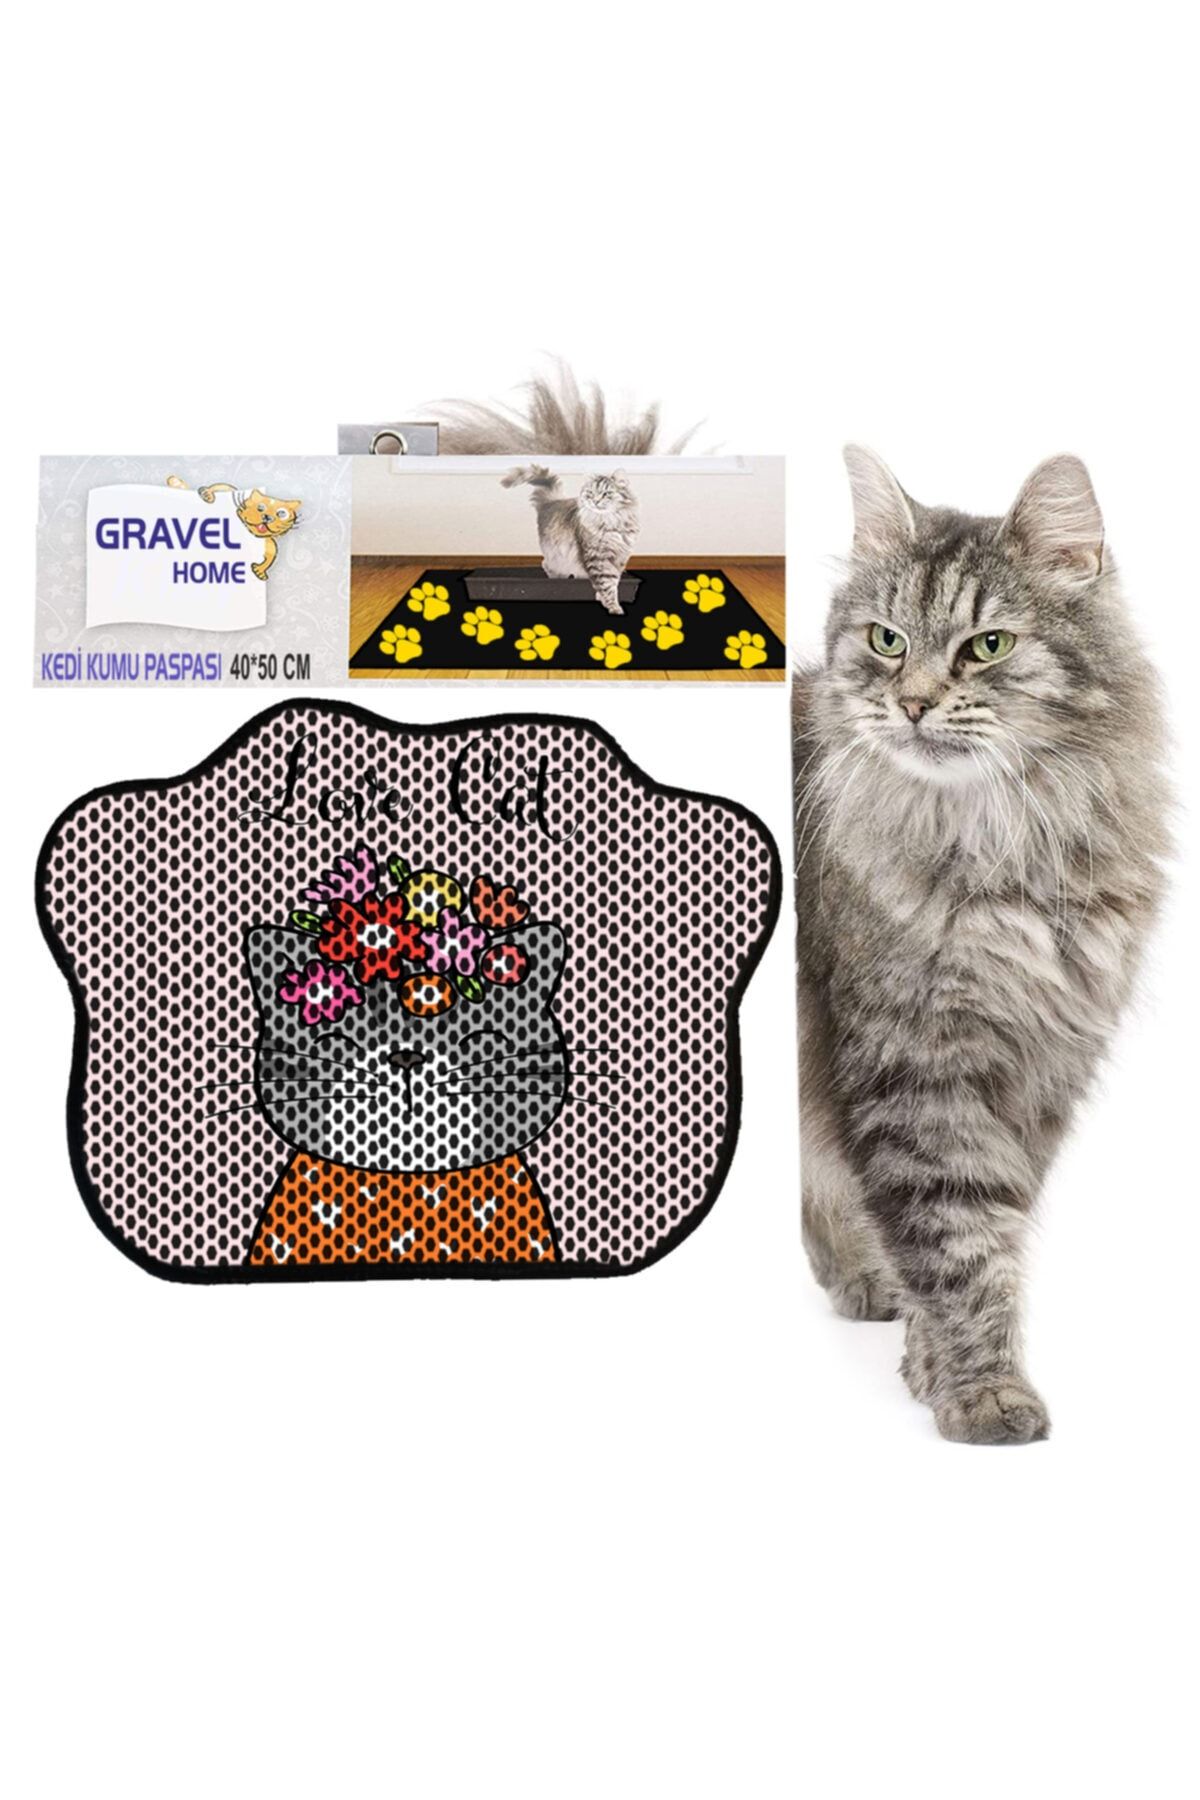 Gravel Kedi Tuvaleti Önü Dekoratif Elekli Kedi Kumu Paspası Fiyatı